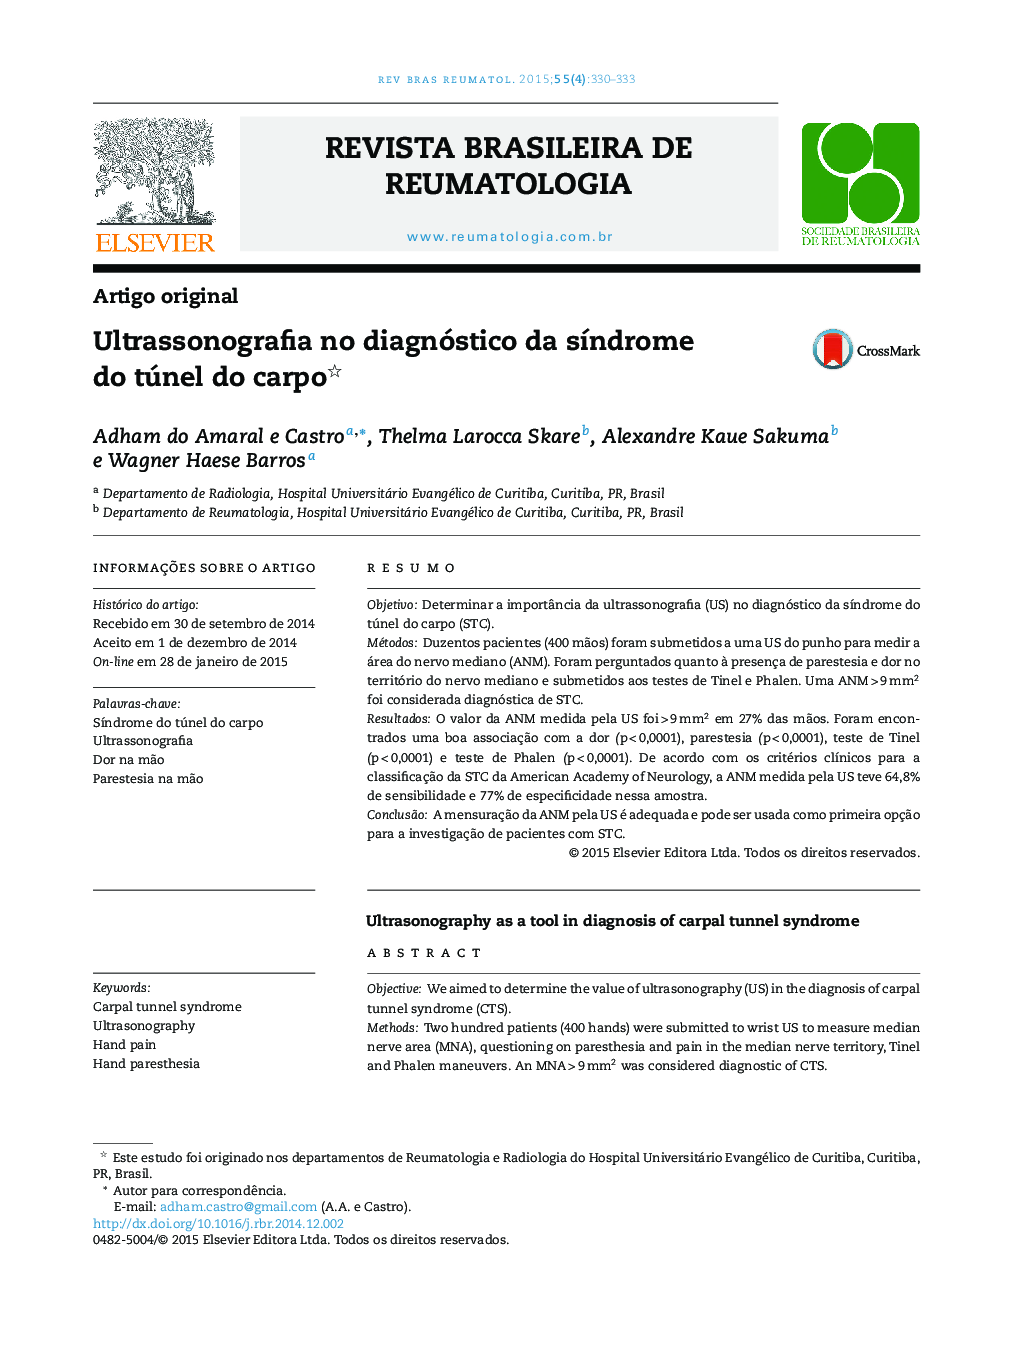 Ultrassonografia no diagnóstico da síndrome do túnel do carpo 